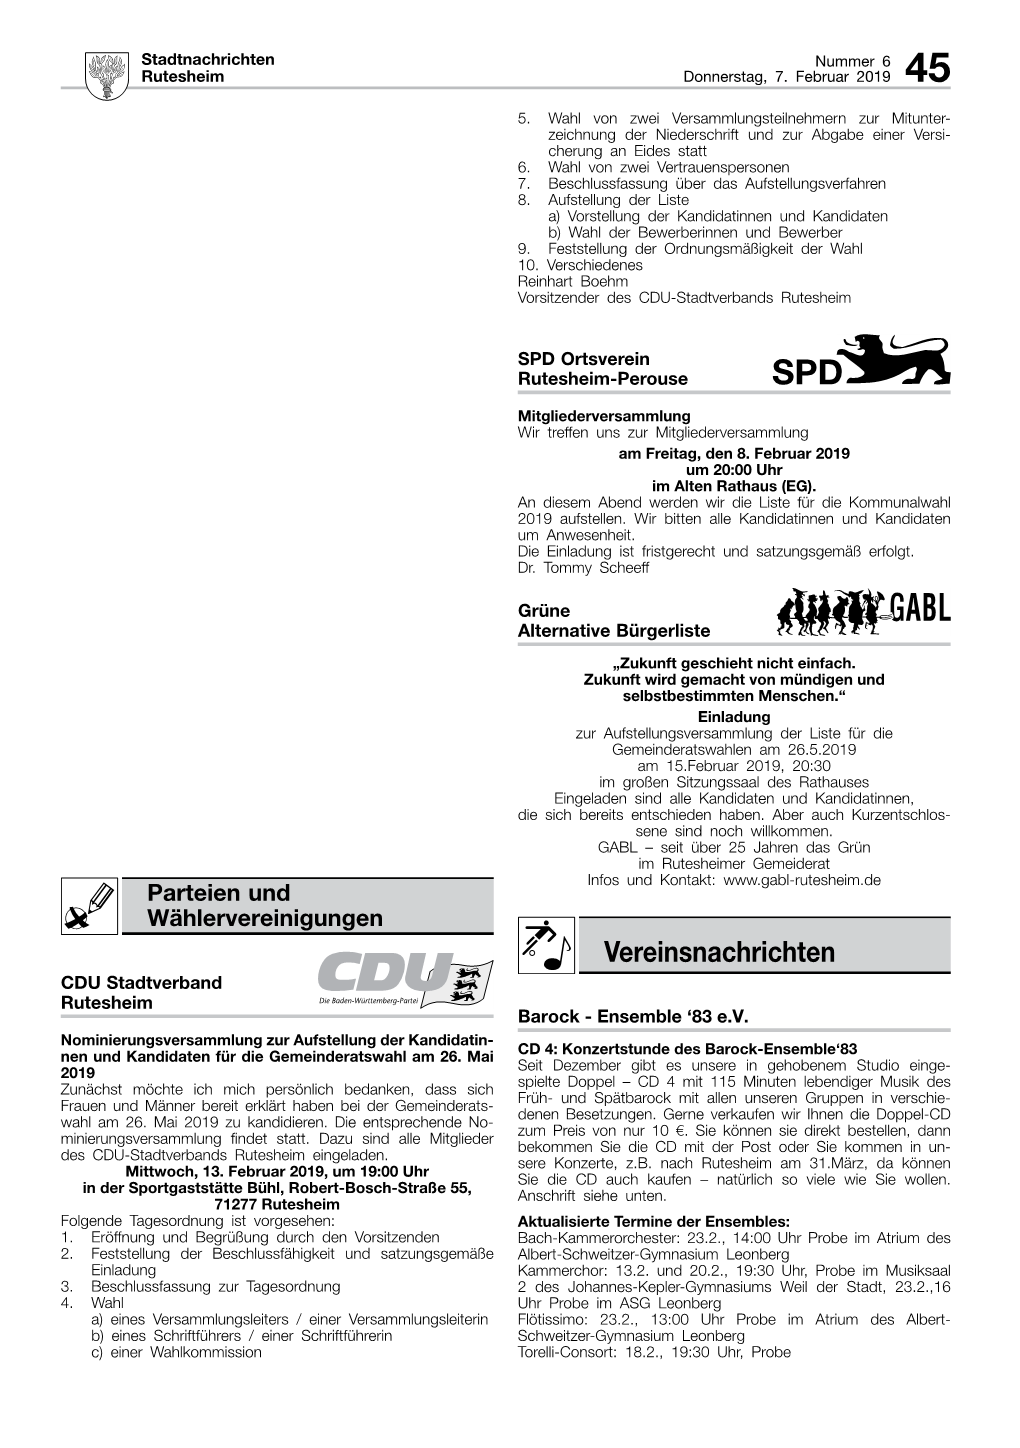 Vereinsnachrichten CDU Stadtverband Rutesheim Barock - Ensemble ‘83 E.V